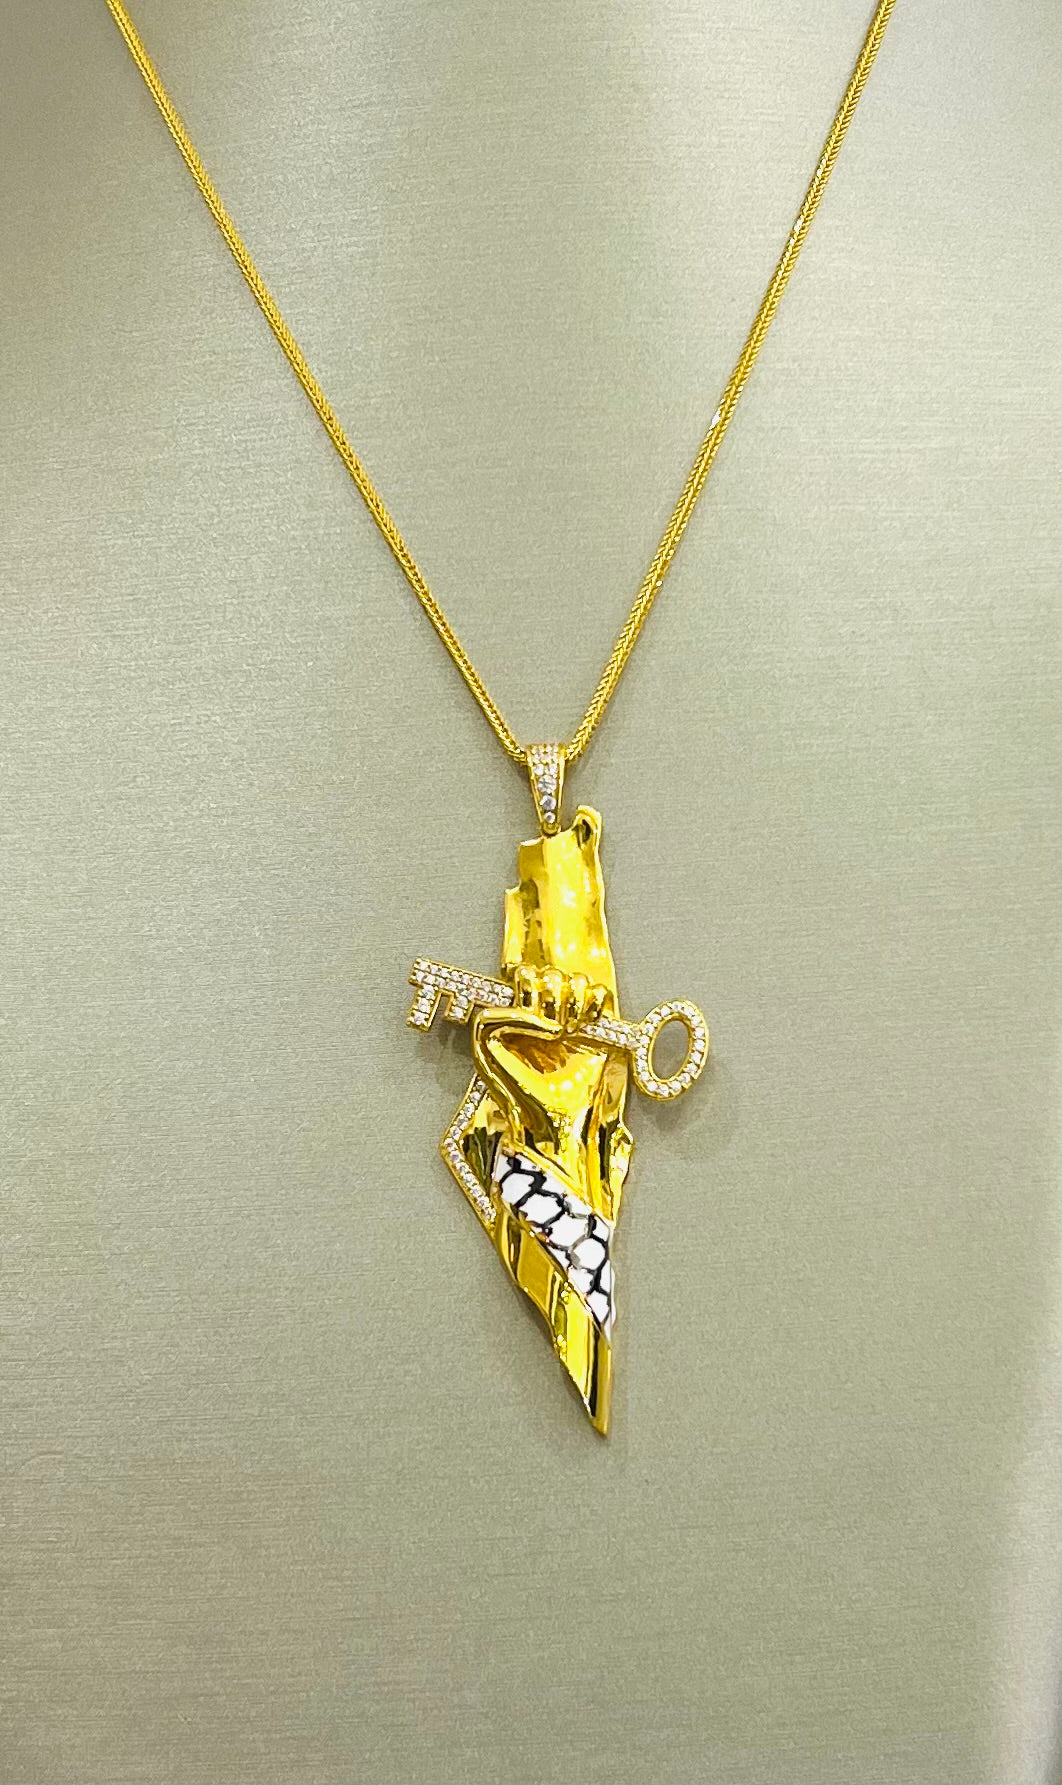 21k Gold Palestine Necklace